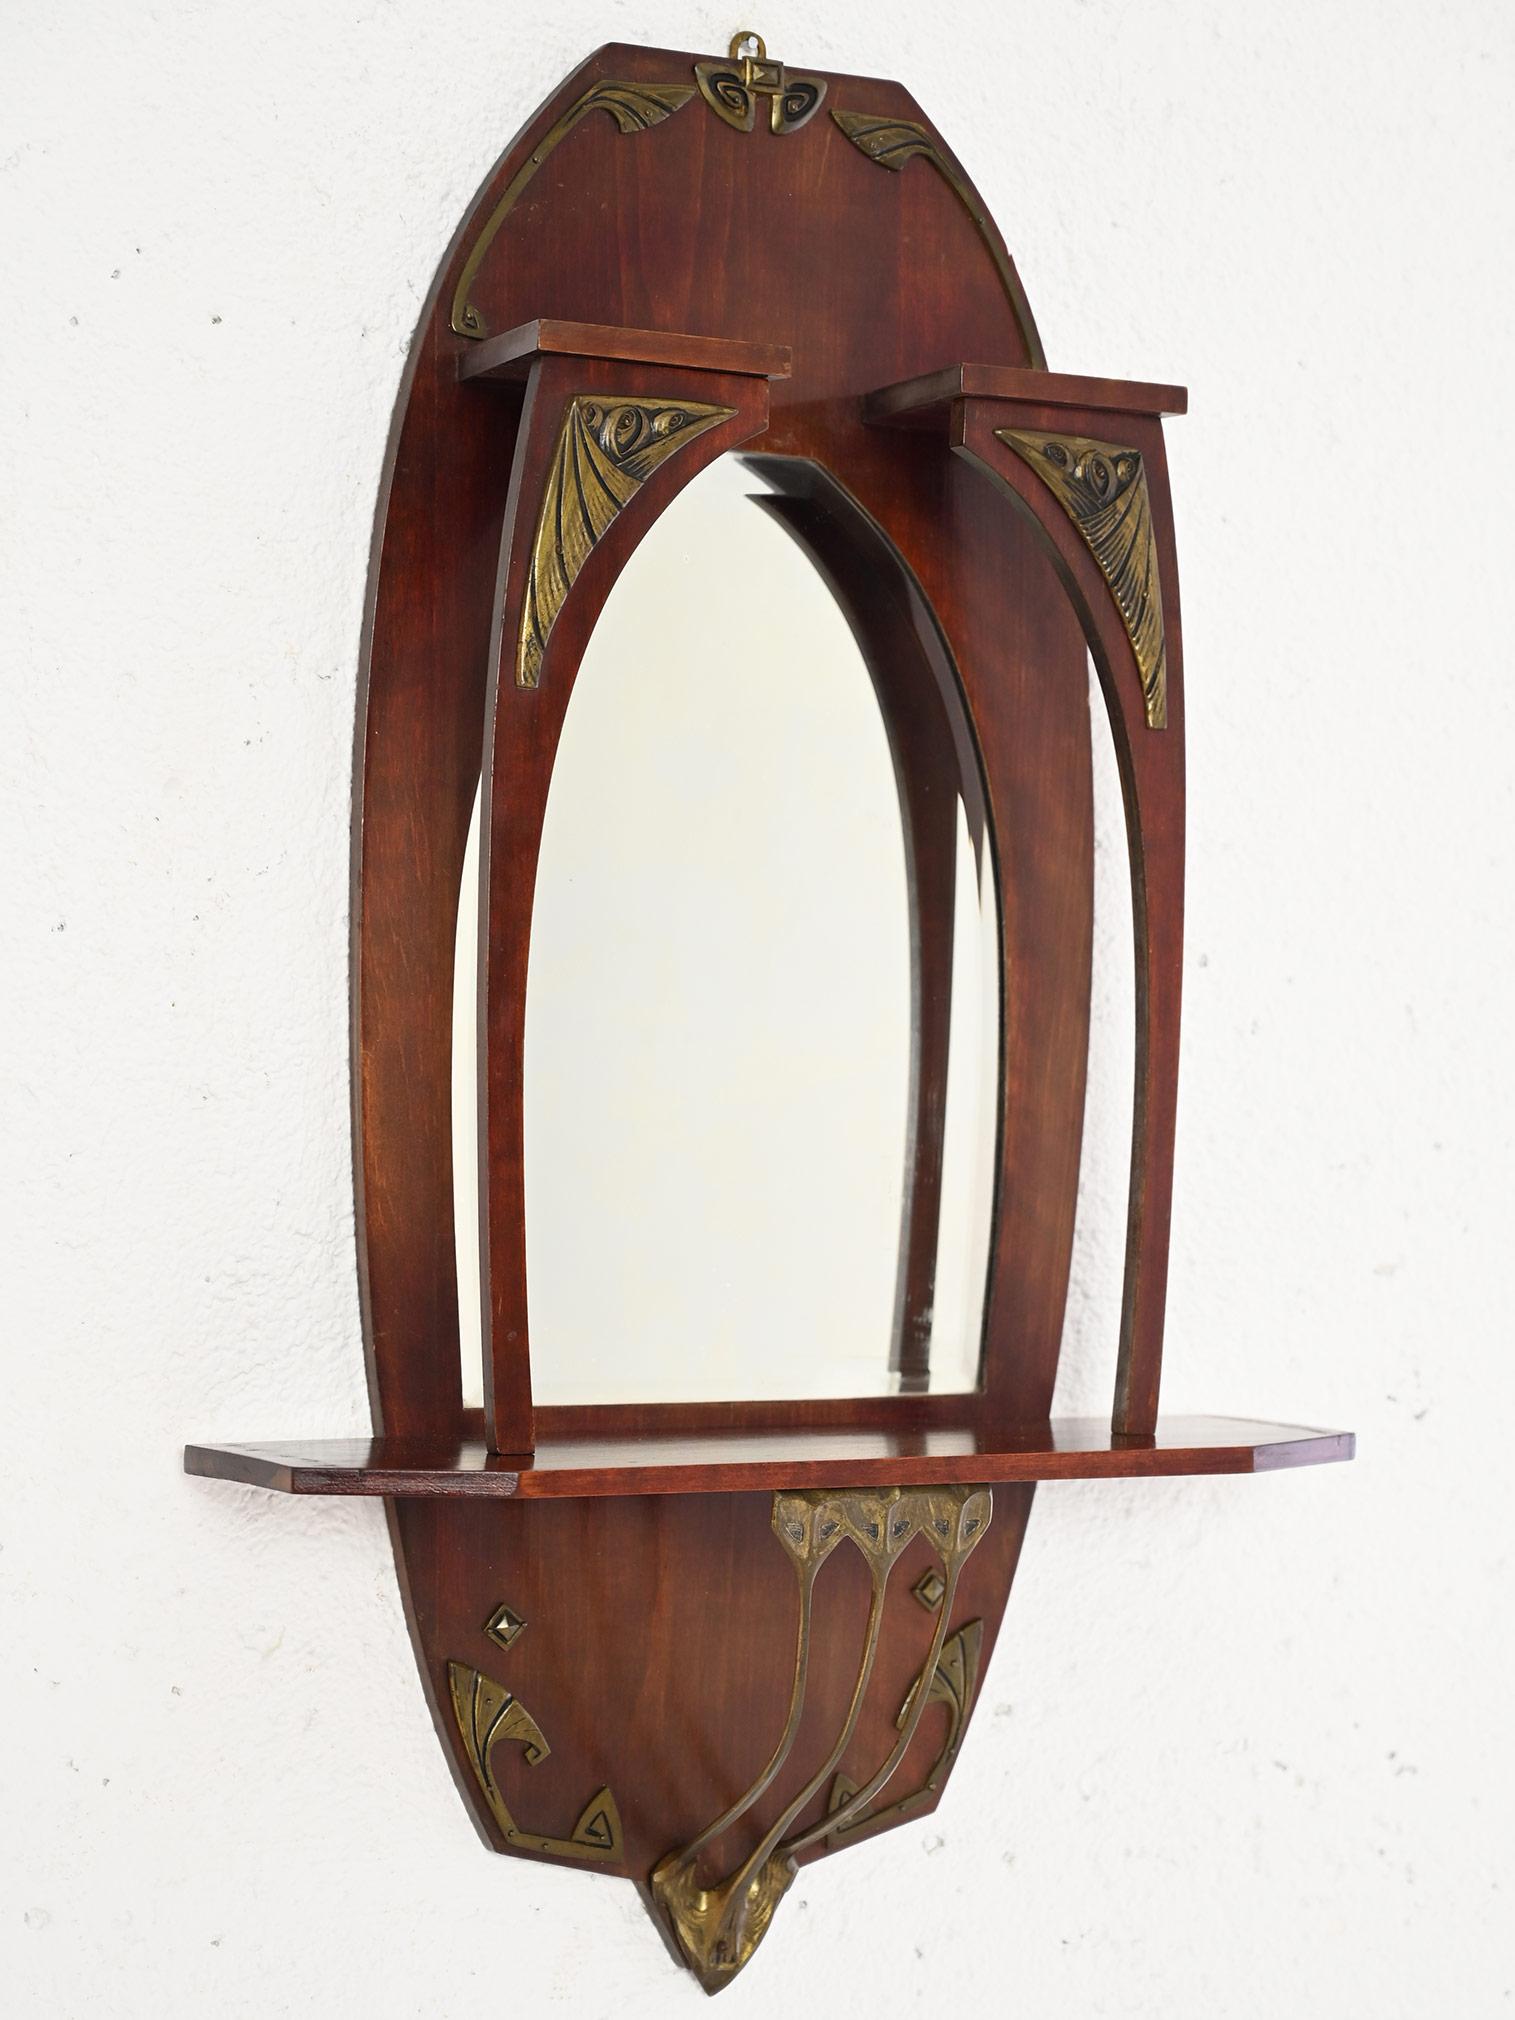 Elégant miroir scandinave vintage.

Un meuble au goût classique et raffiné qui se distingue par la structure particulière de son cadre qui comporte une petite étagère et plusieurs décorations en laiton de style art nouveau.
Grâce à sa petite taille